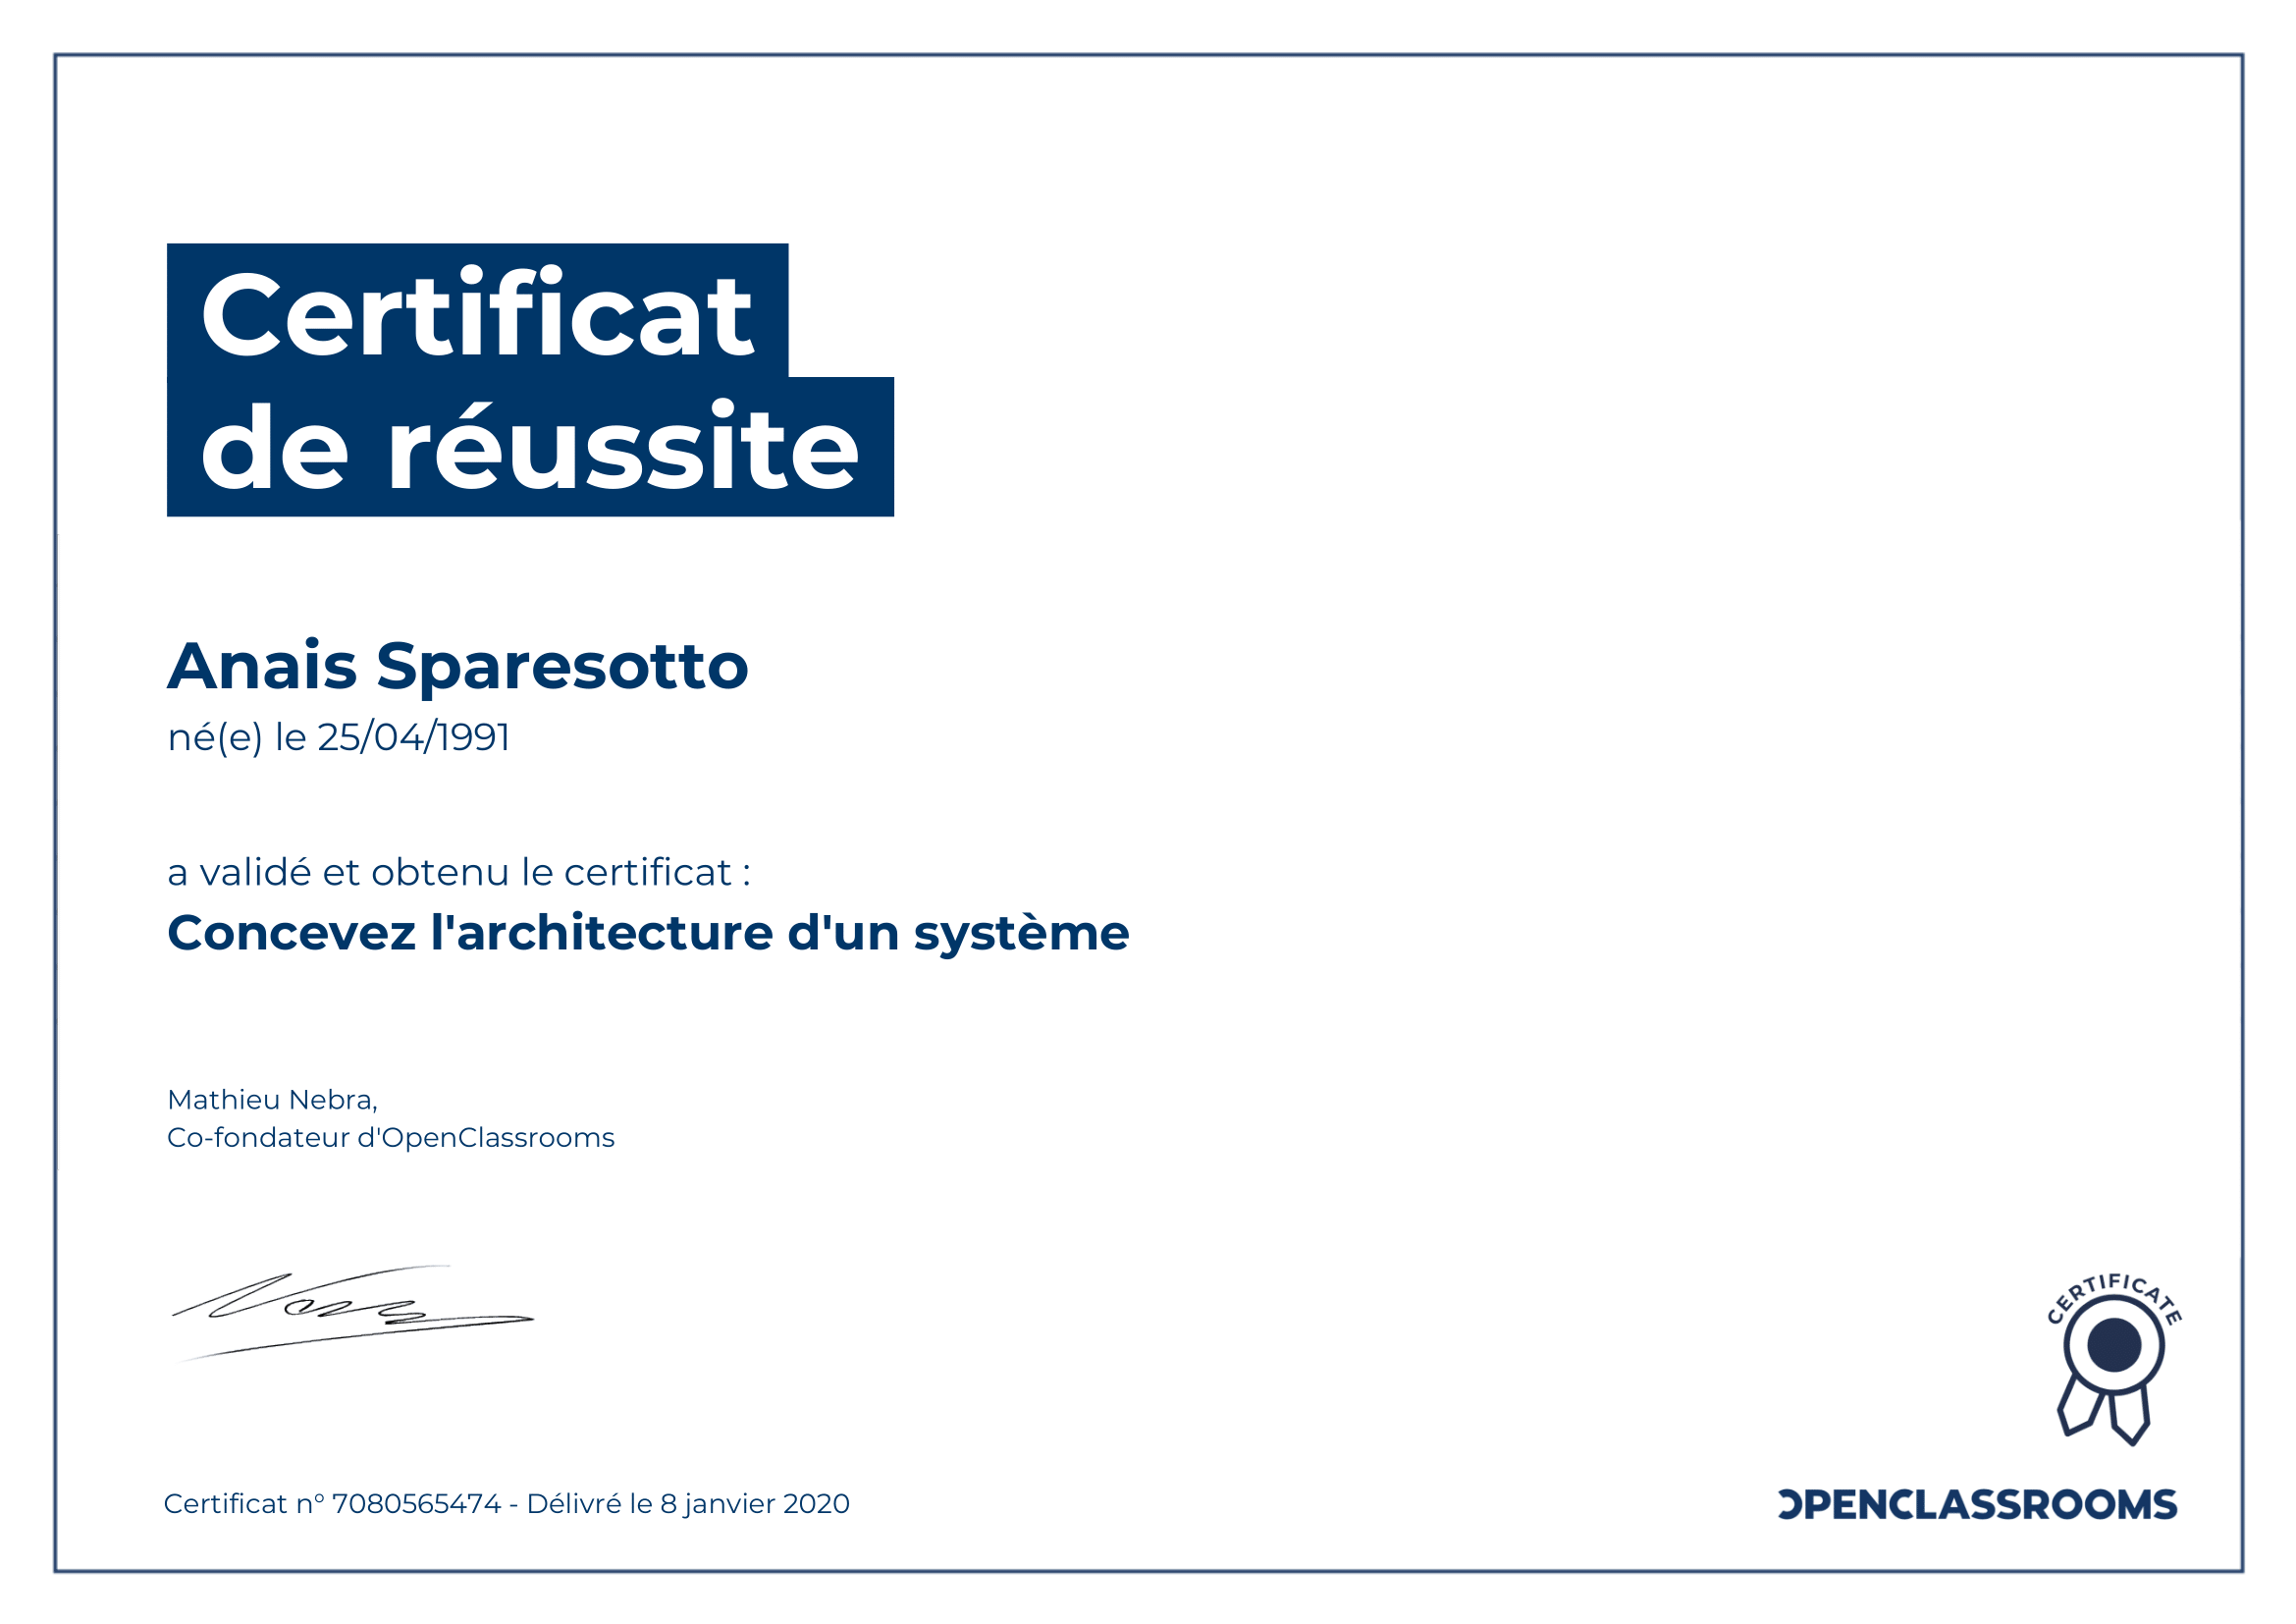 certificat de réussite architecture systeme sparesotto anais